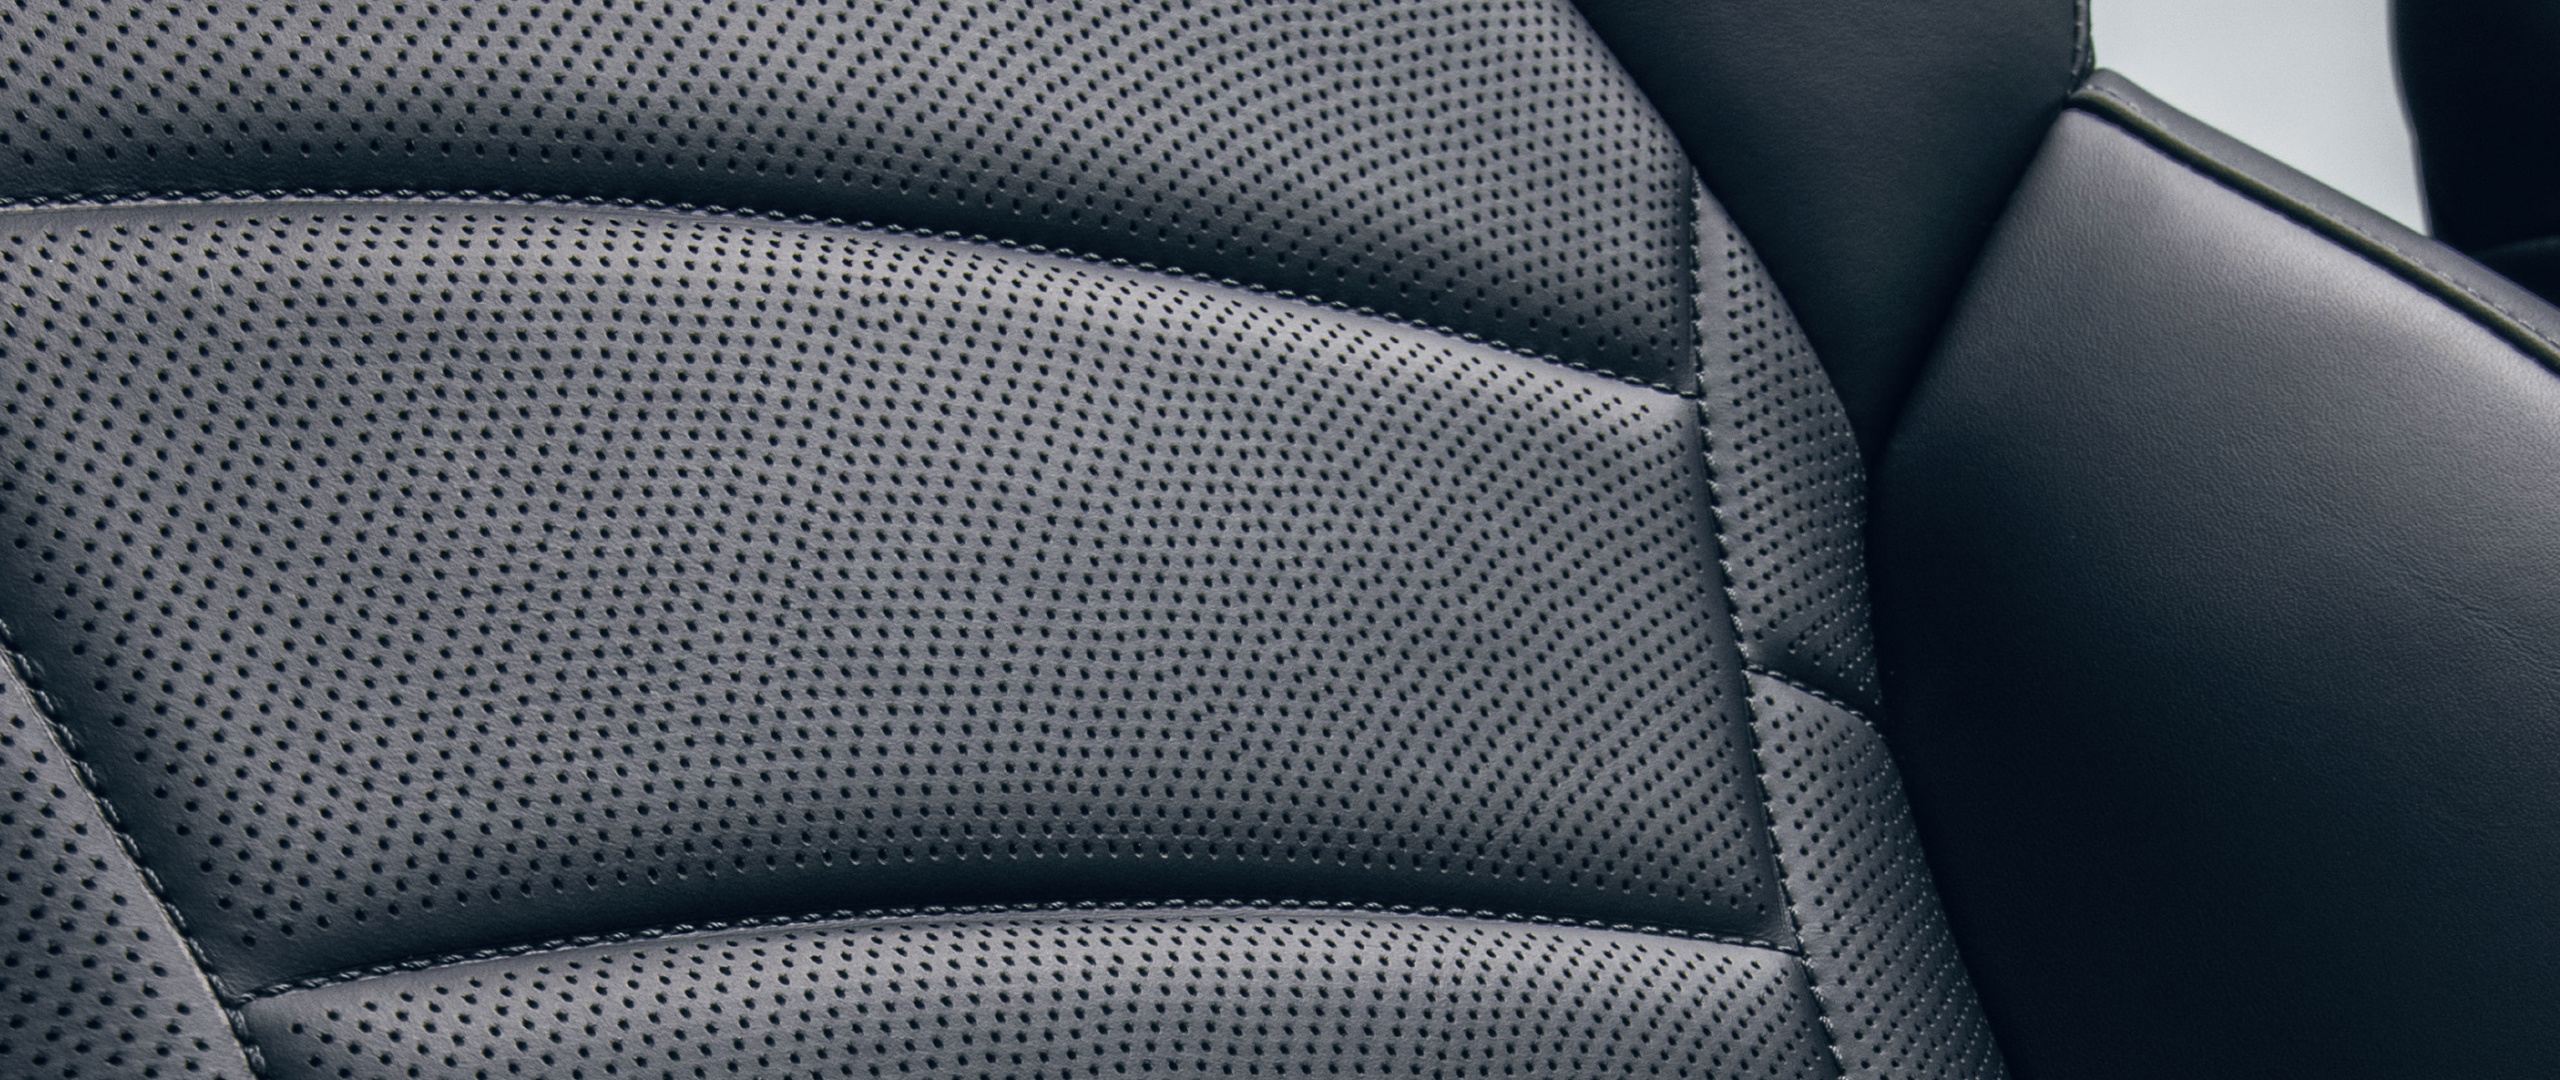 2023 Kia Stinger Interior Leather Seat Trim Close-Up